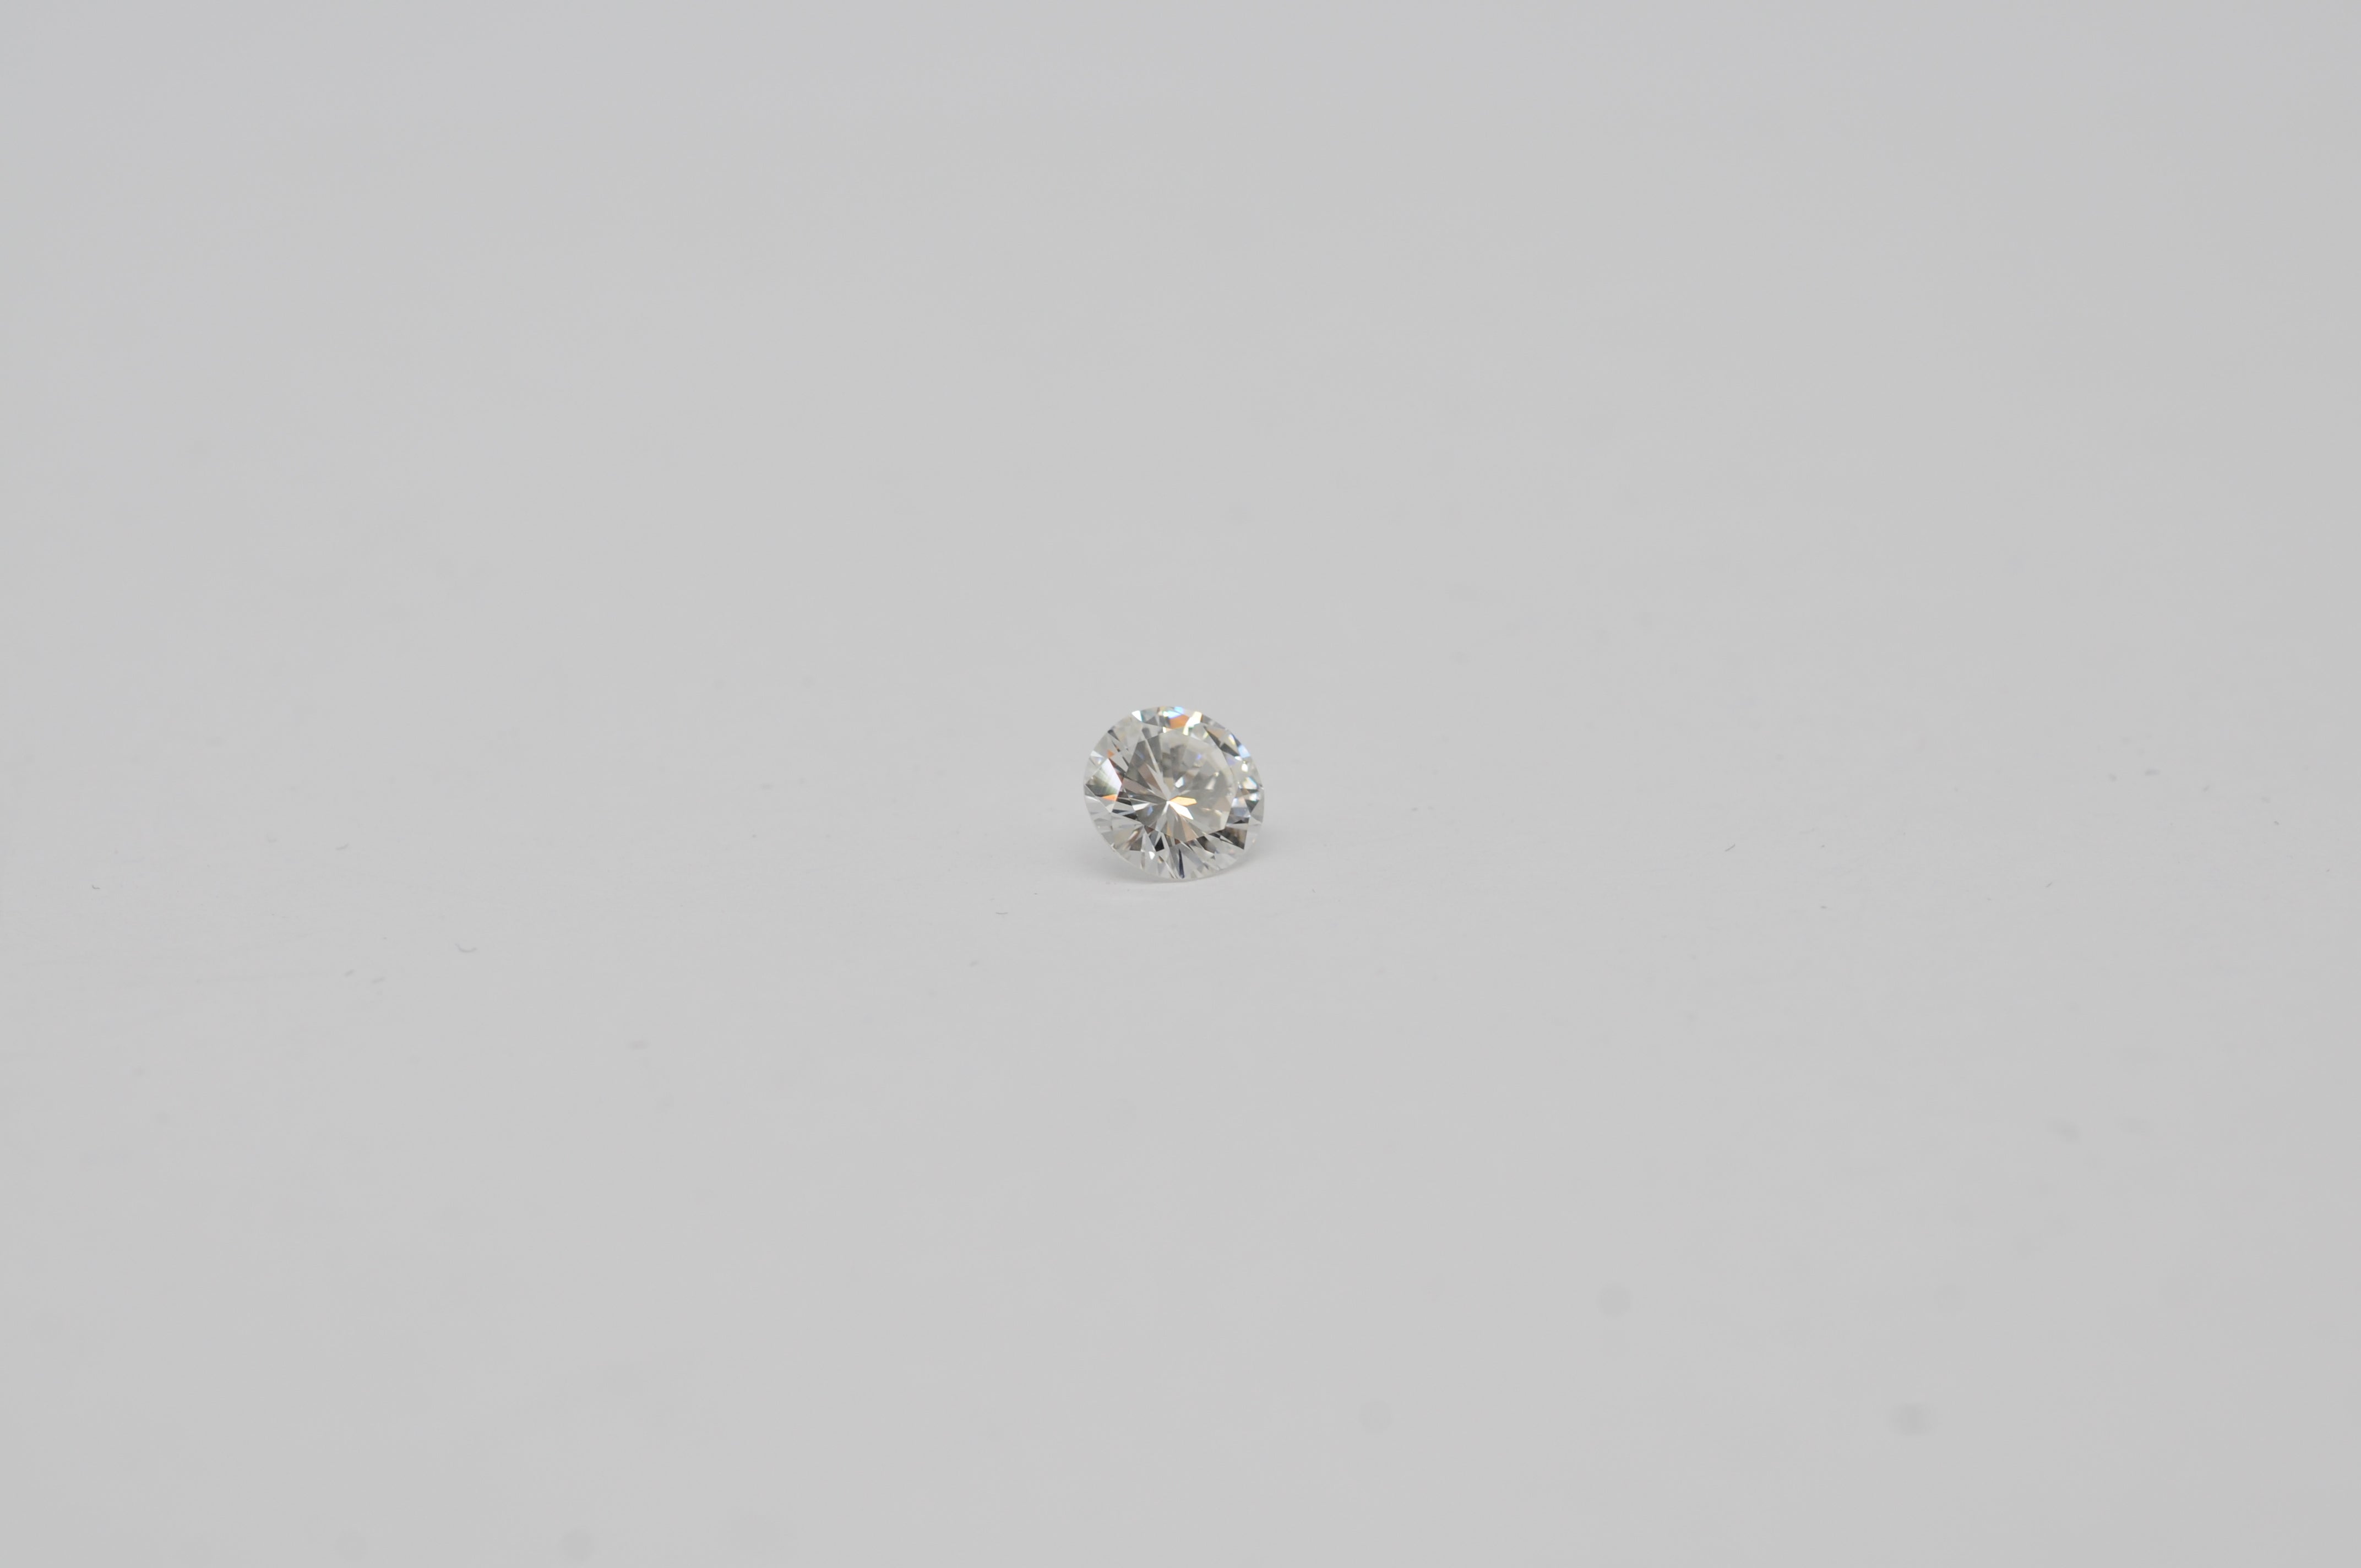 Diamant, ein Edelstein im Brillantschliff mit einem Gewicht von 1,06 Karat. außergewöhnliche Eigenschaften, die seine exquisite Schönheit ausmachen:

Details zum Diamanten:

Die Form: Brillant
Gewicht: 1,06 Karat
Reinheitsgrad: Internally Flawless